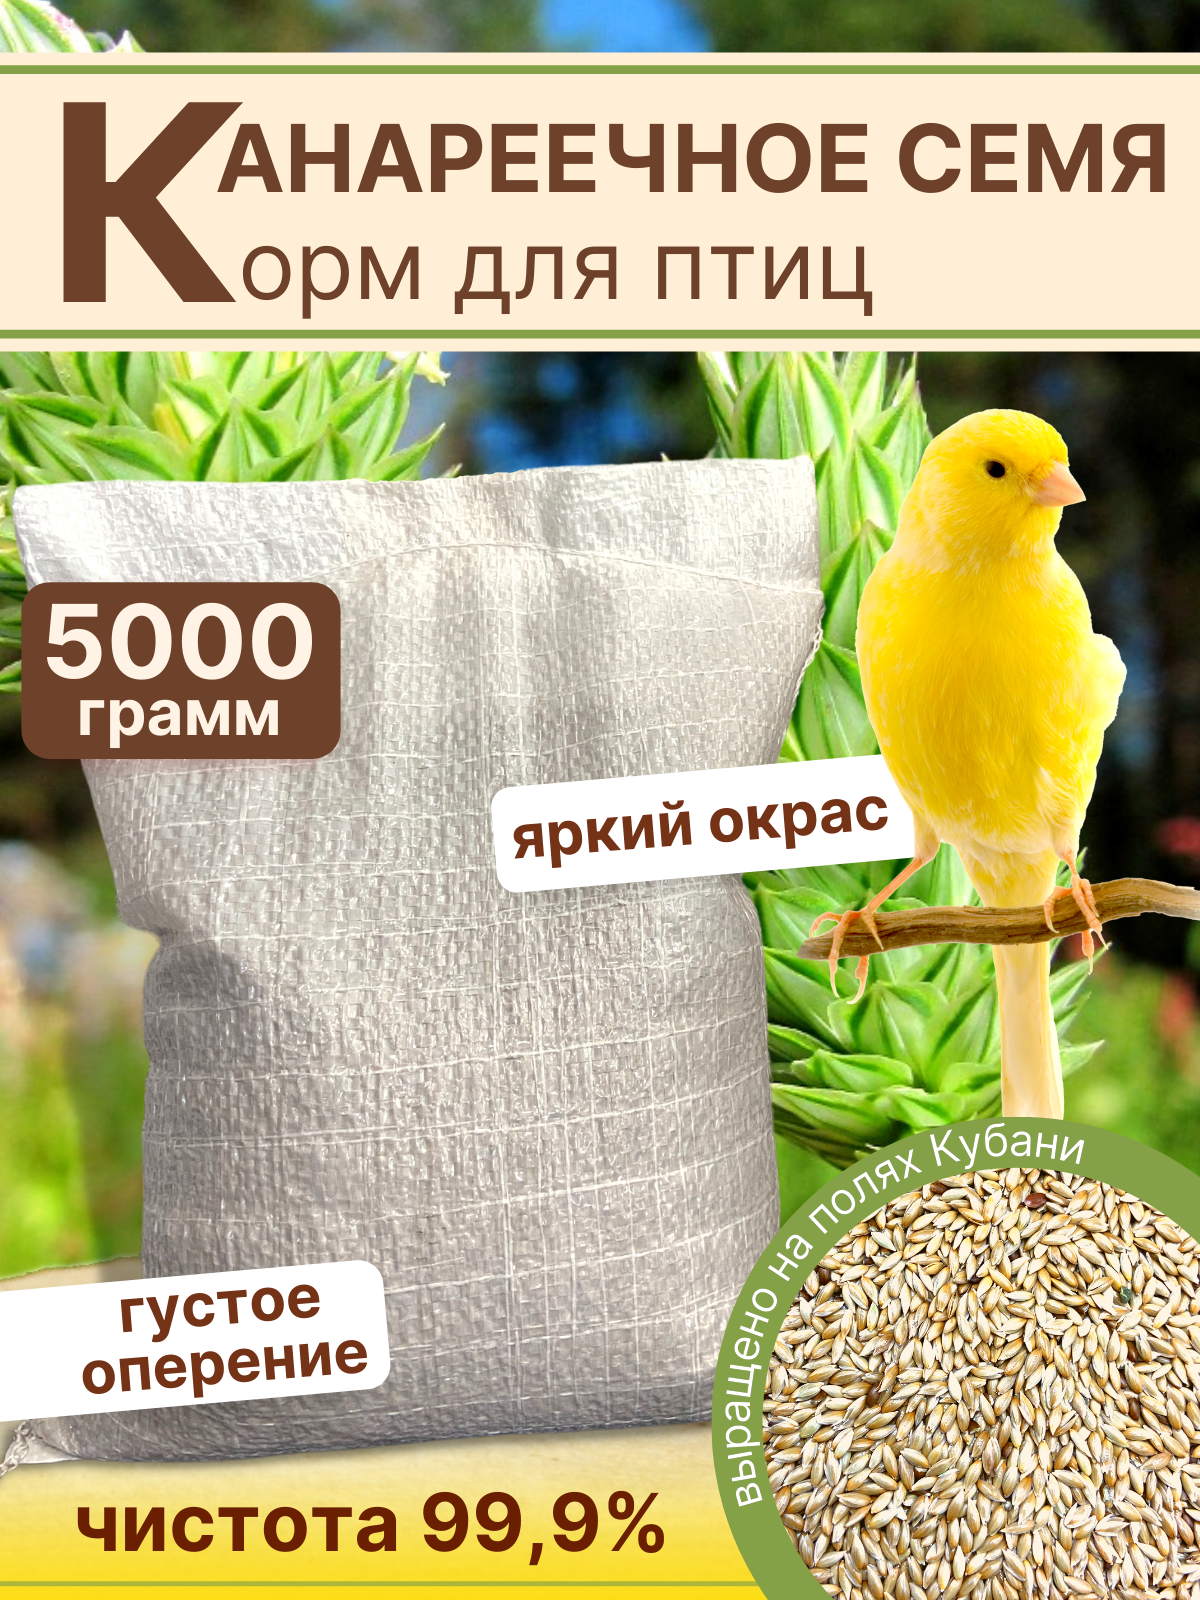 Канареечное семя корм для птиц 5кг